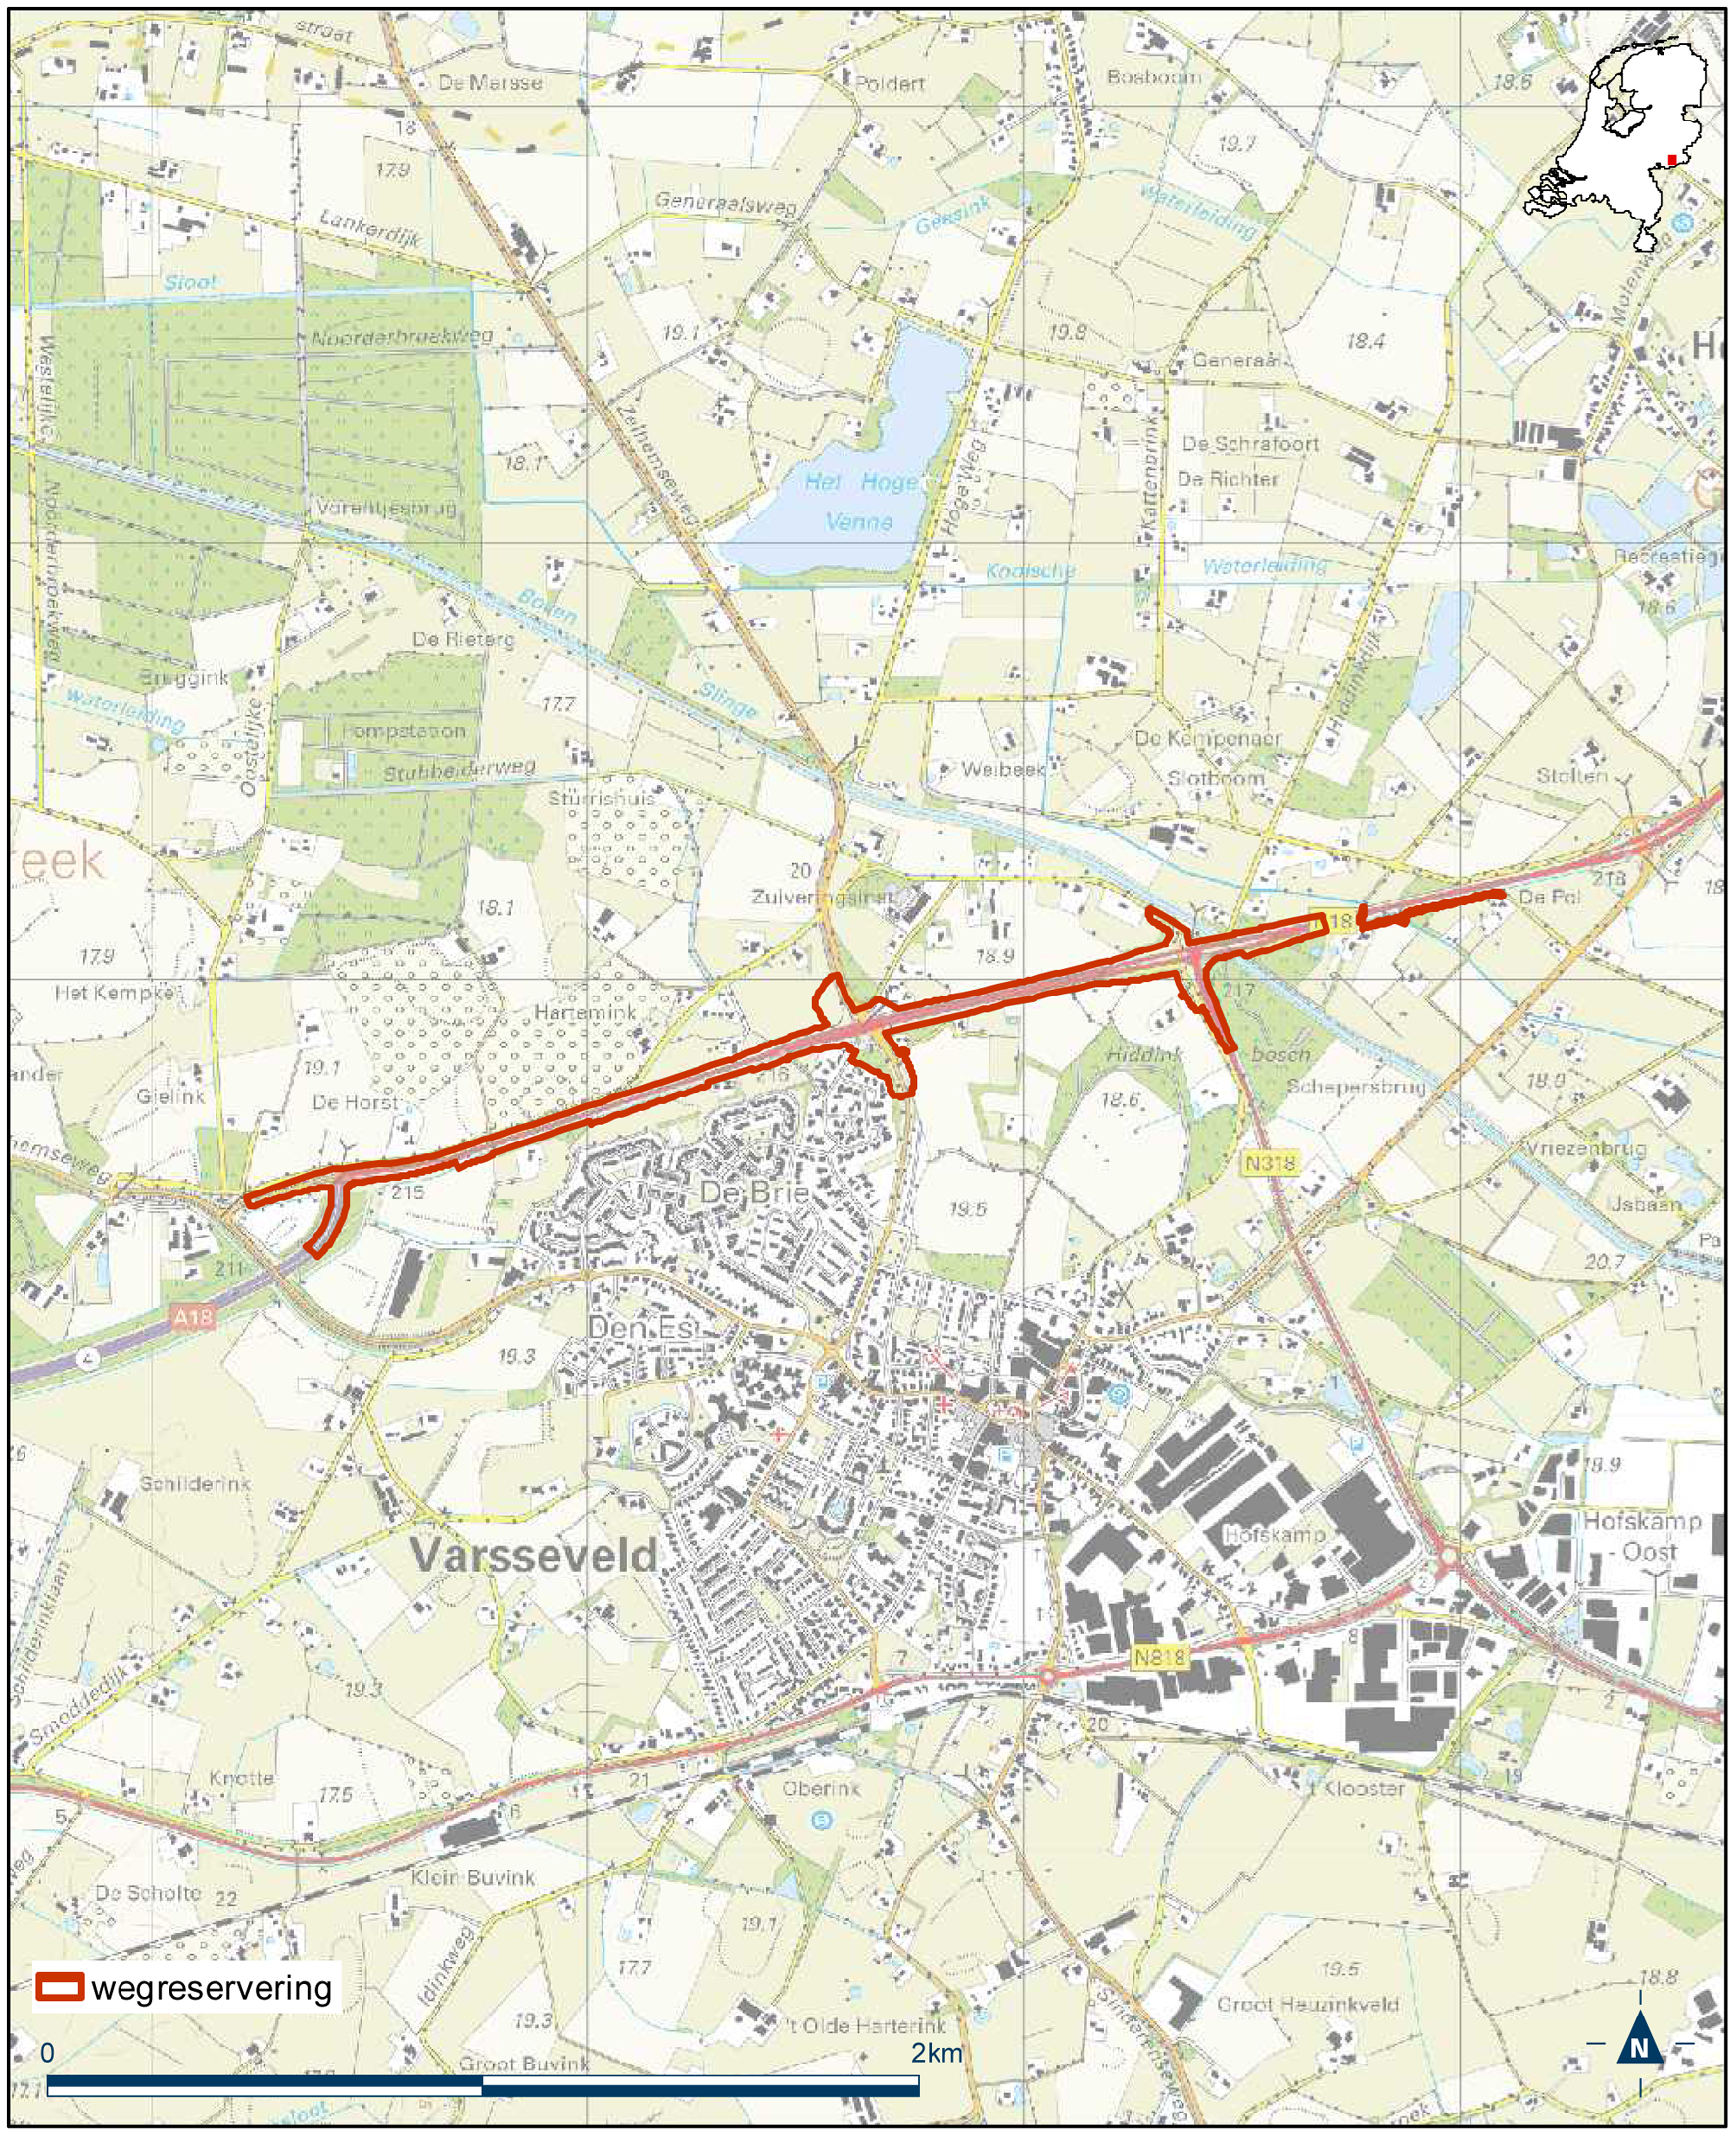 Detailkaart 1 reserveringsgebied nieuwe hoofdweg N18 Varsseveld-Enschede